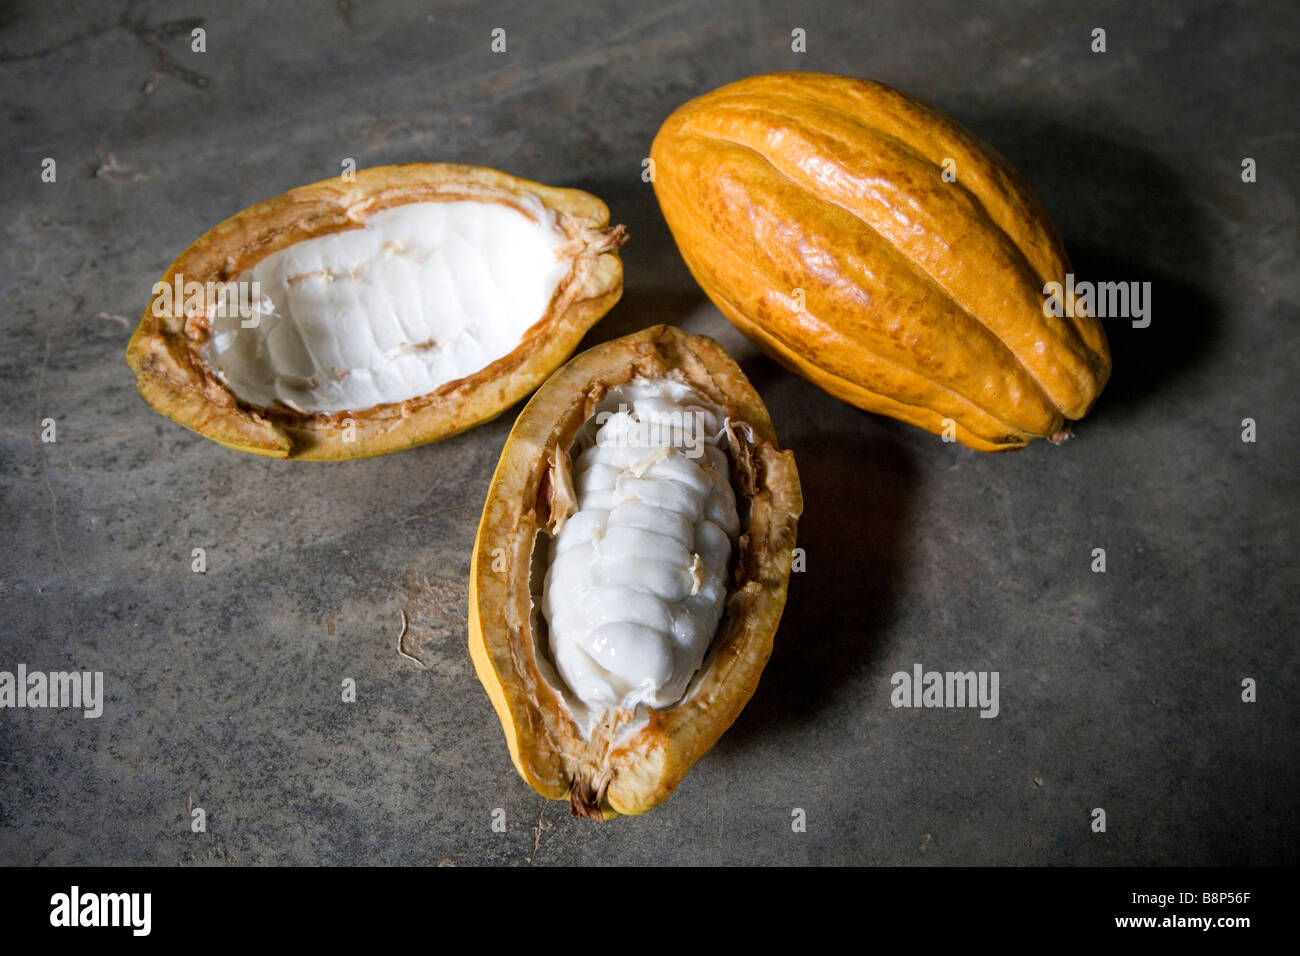 Cocoa production, Domican Republic Stock Photo